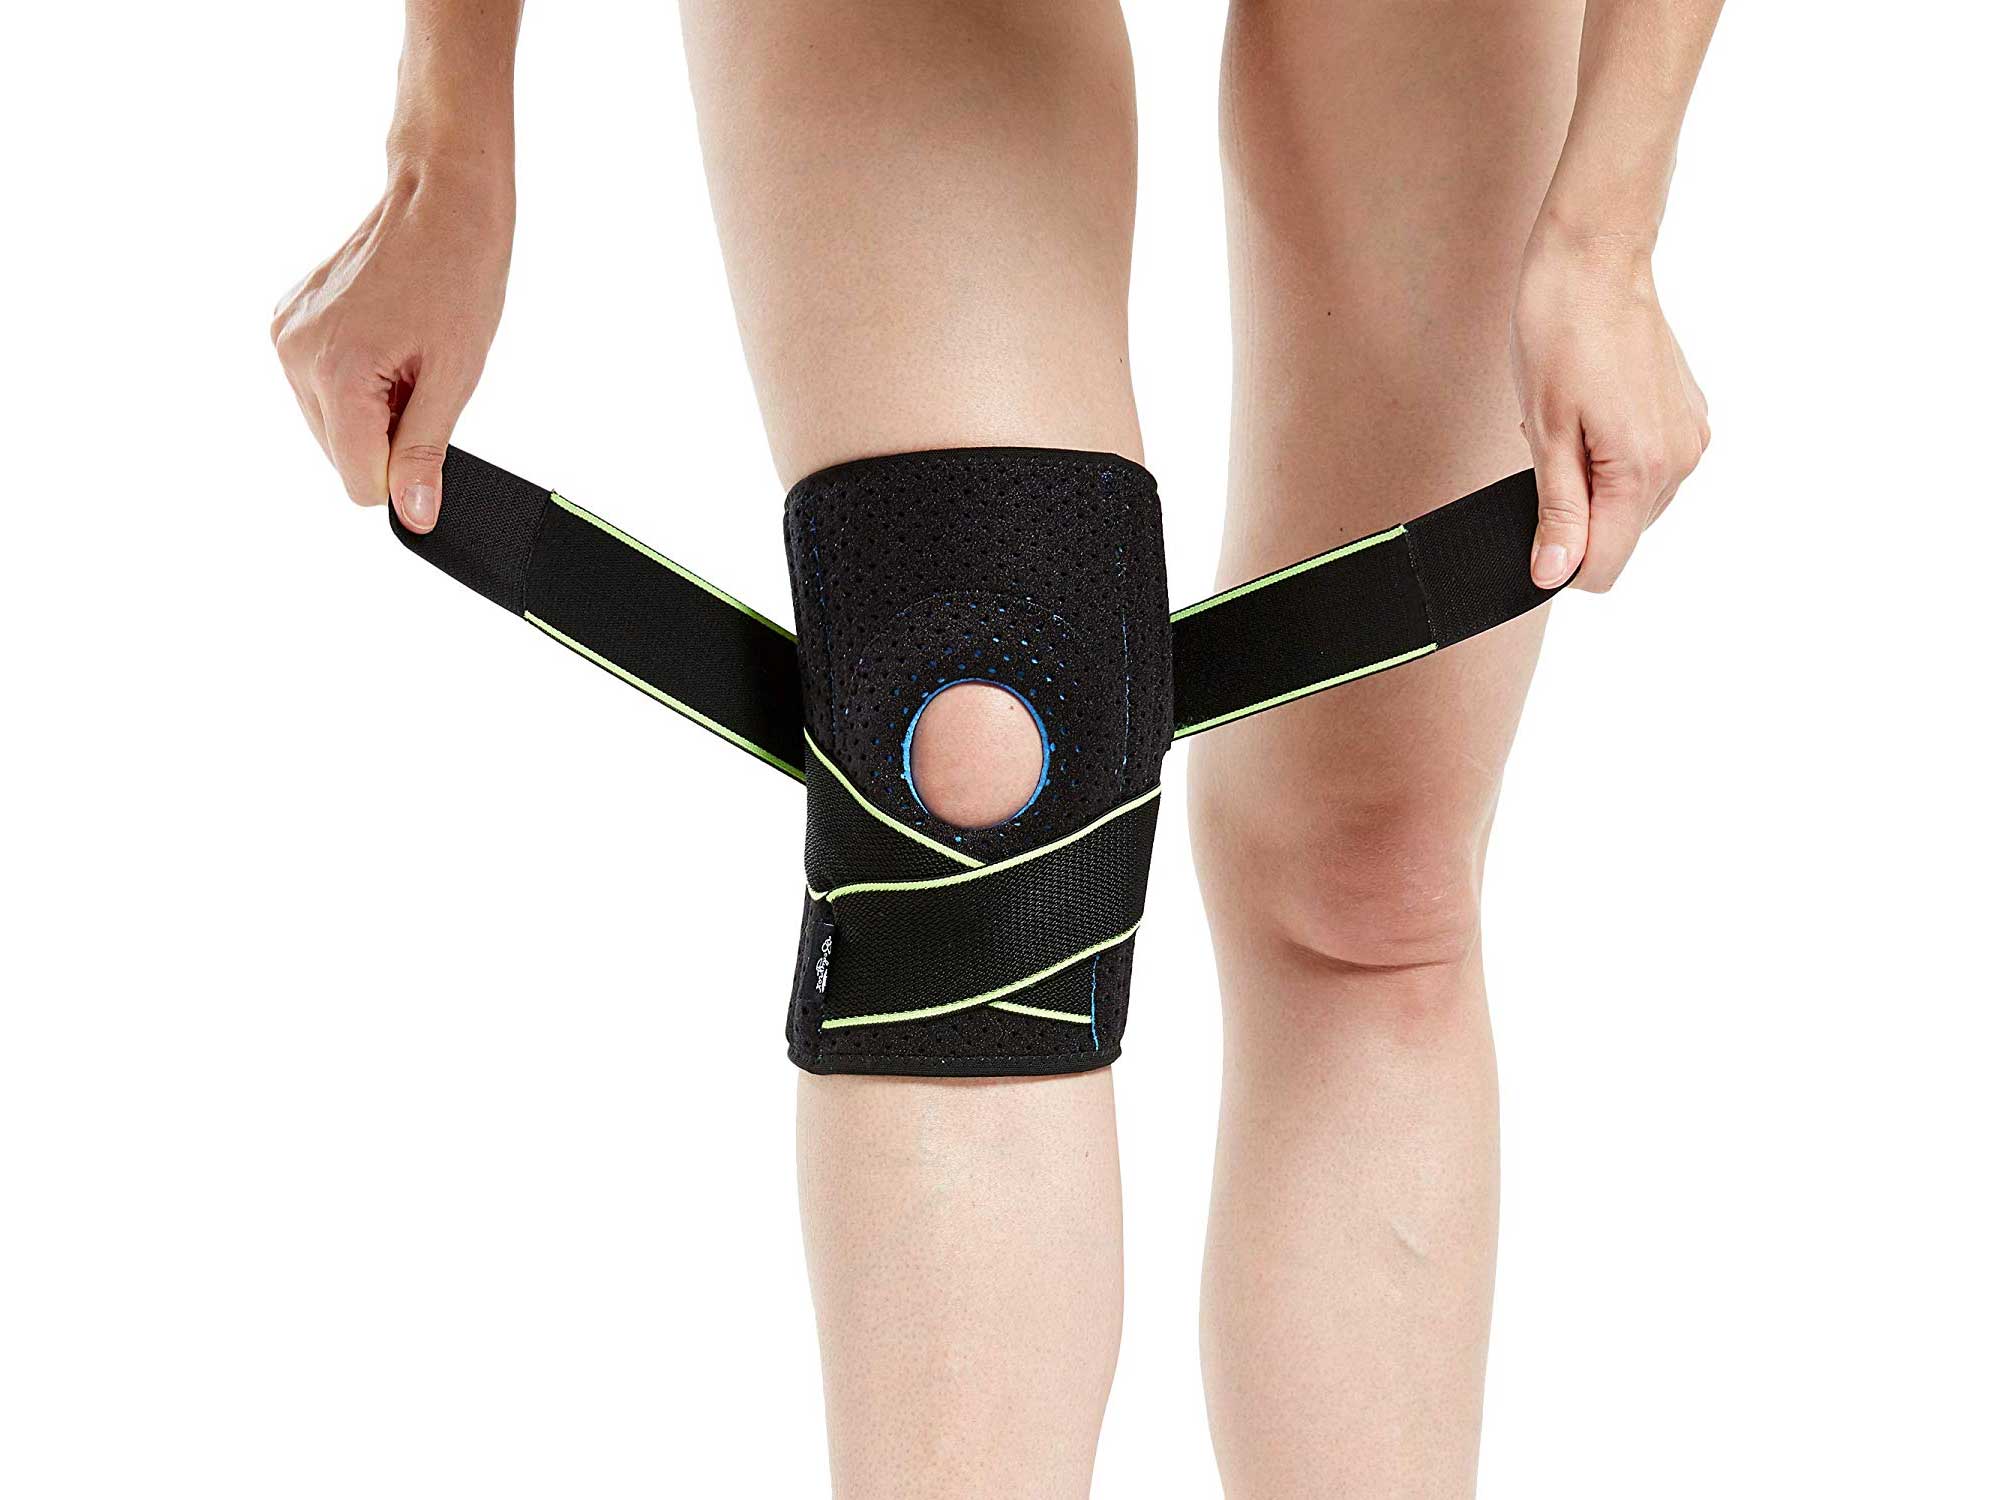 Woman wearing knee brace